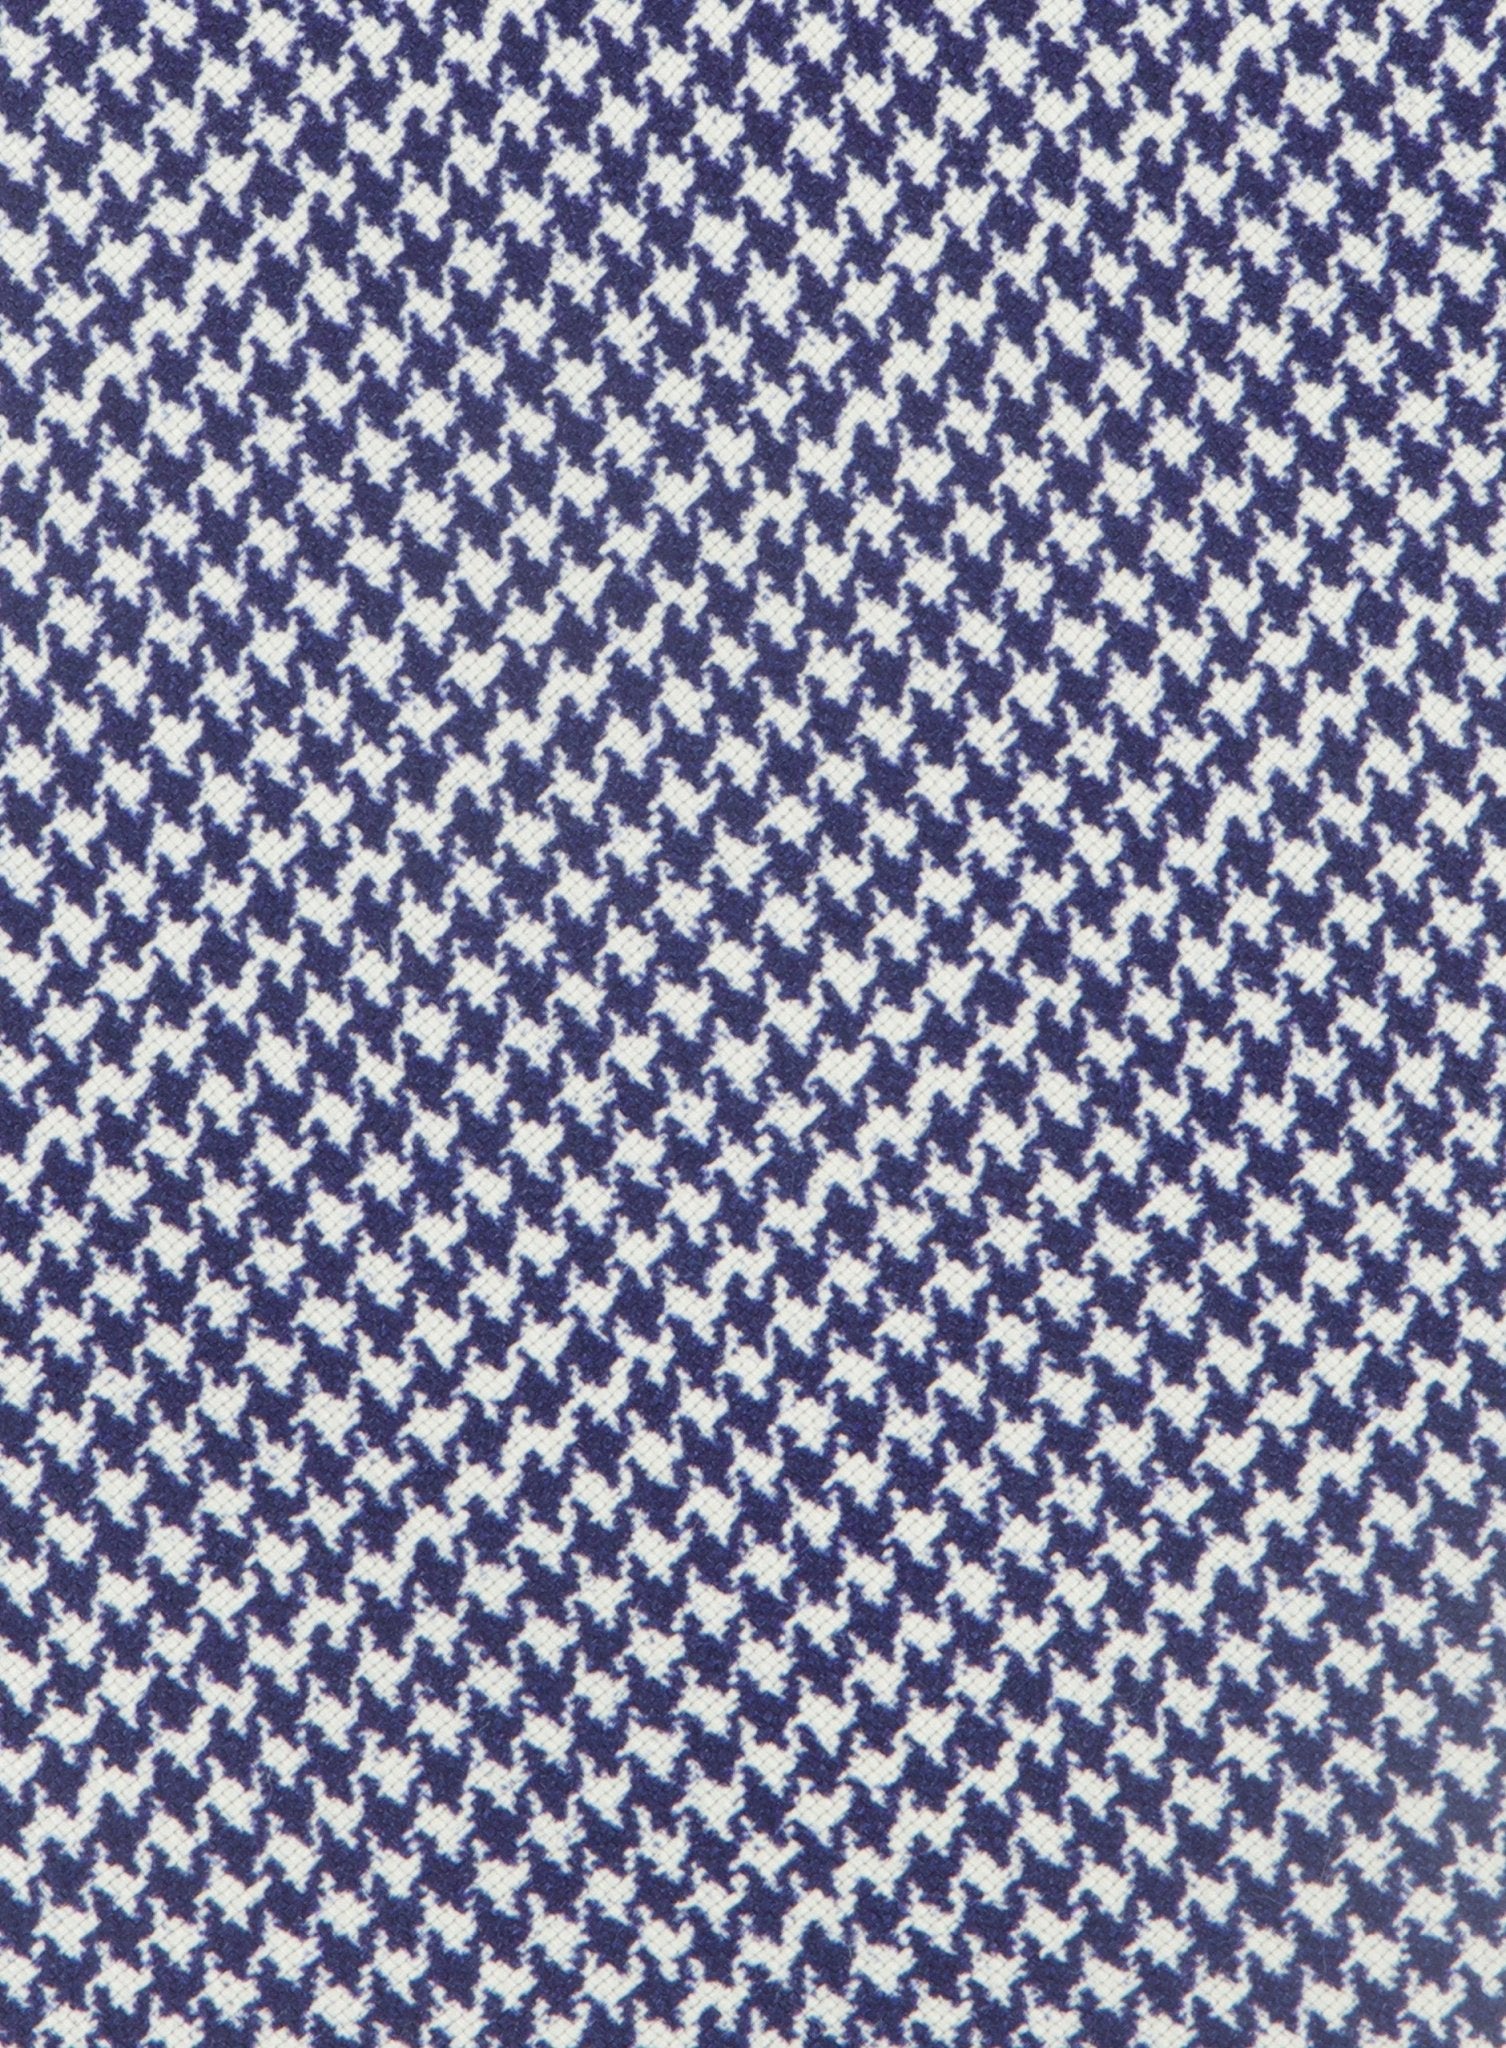 Pied-de-poule stropdas van zijde | BLUE NAVY